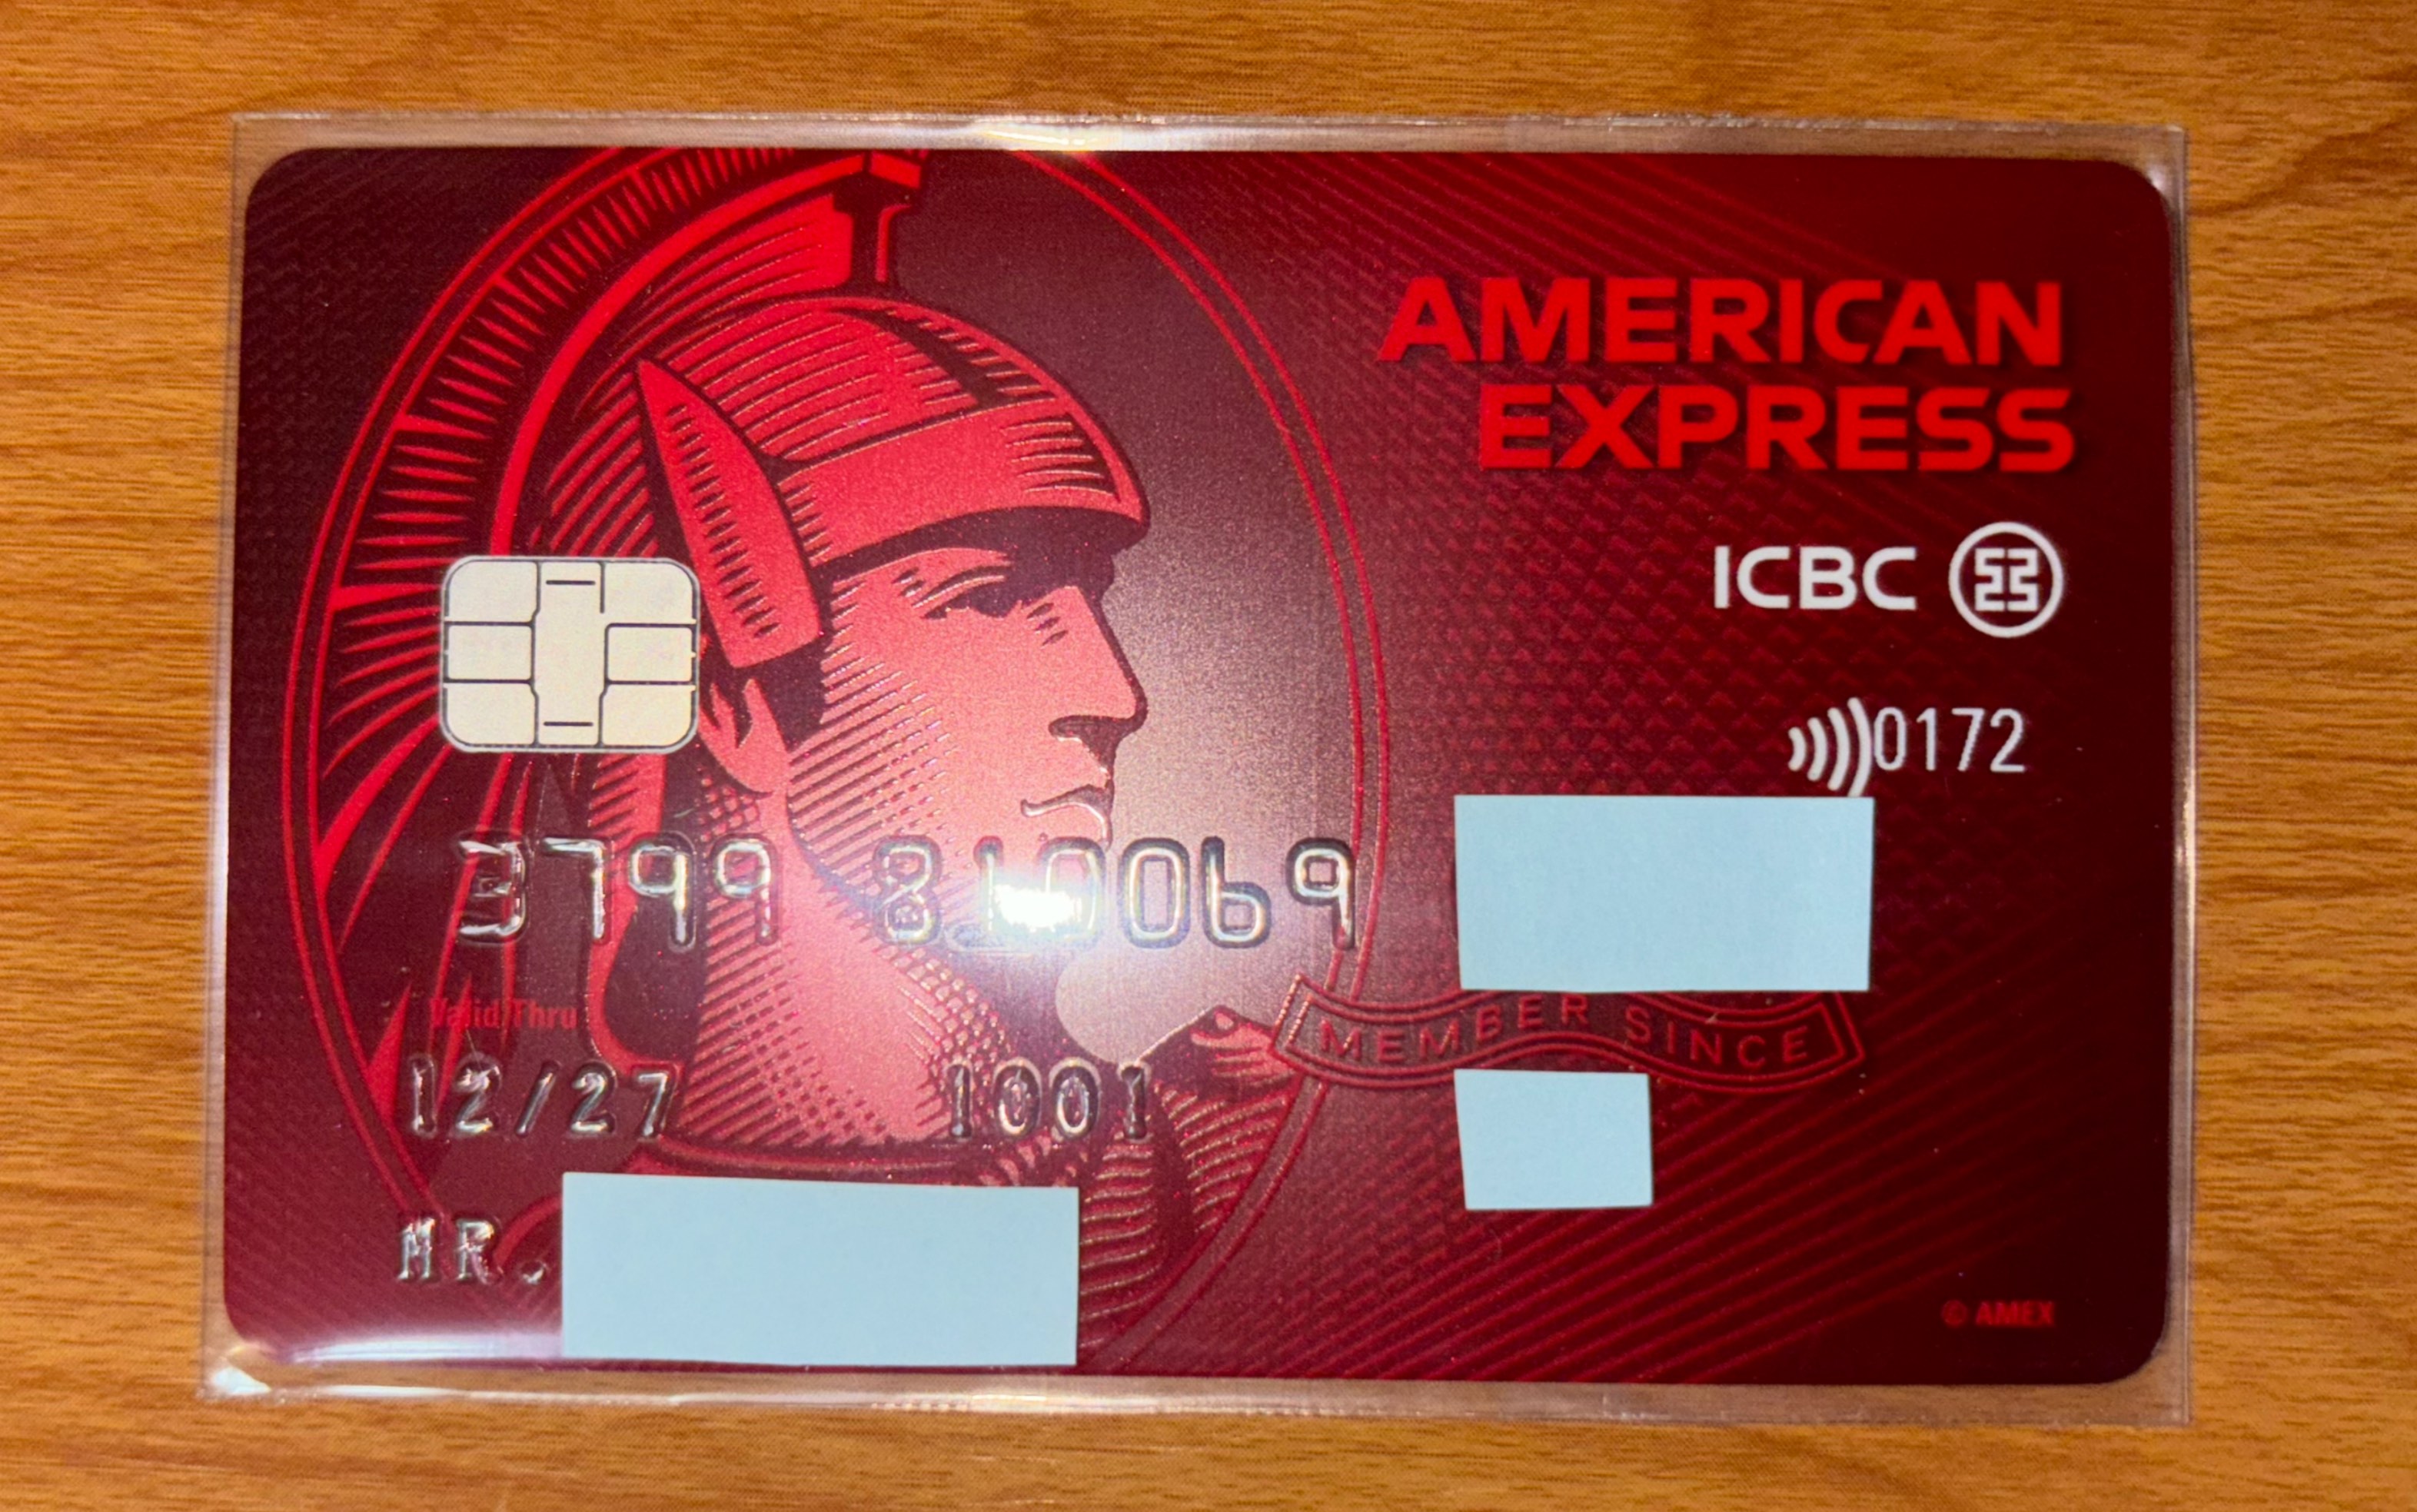 应该是工商银行发行的第一张大头版美国运通信用卡吧…话说工行咋就不